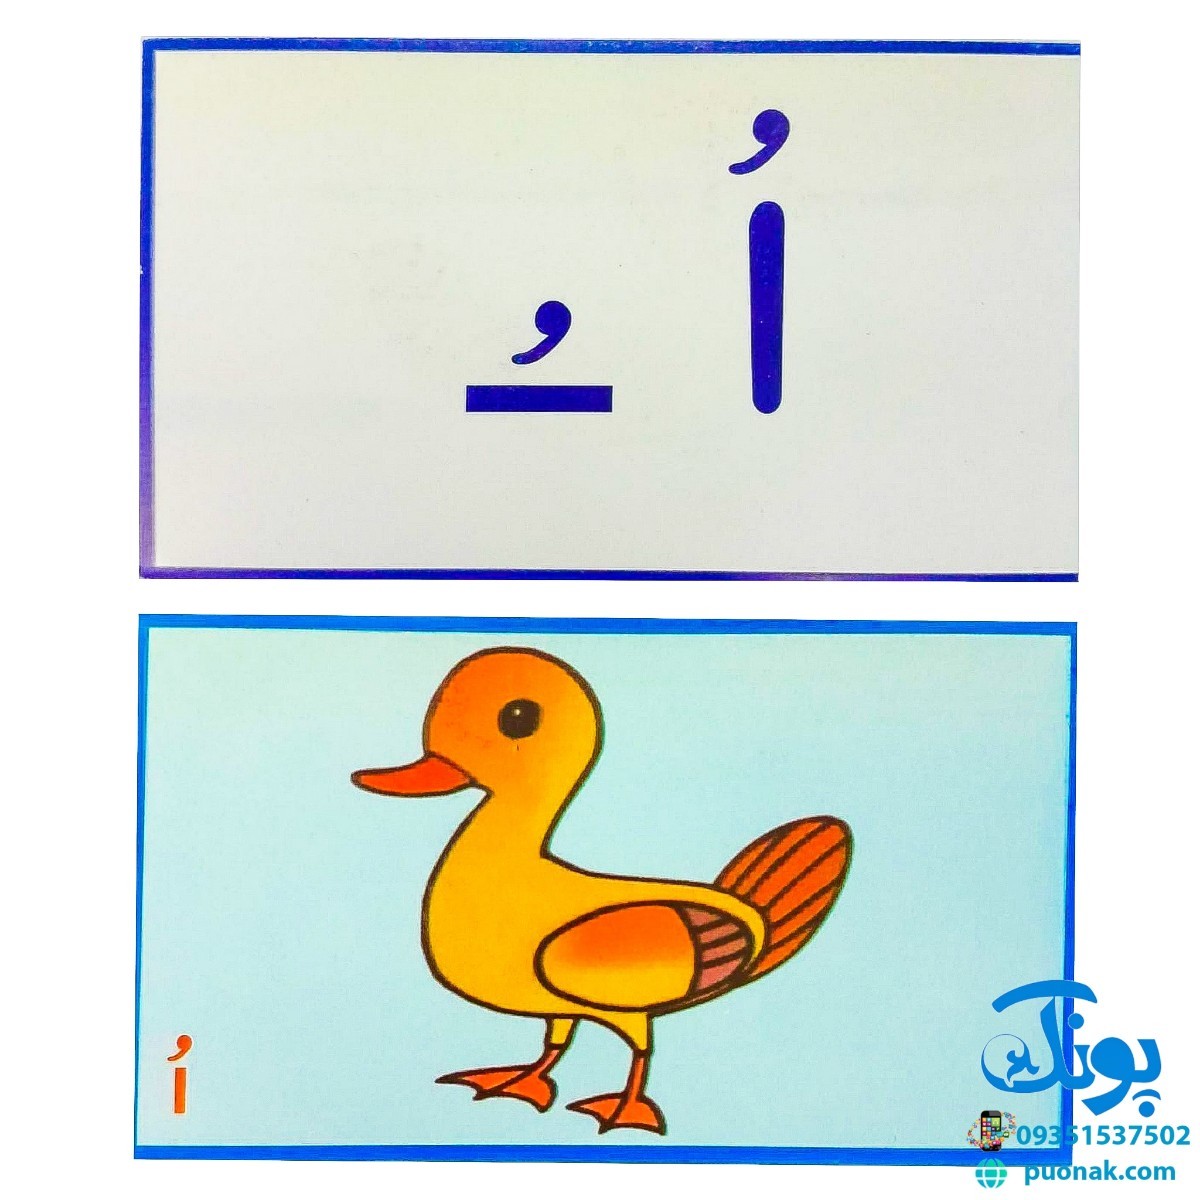 بازی با حروف الفبای فارسی ۲ تصویری